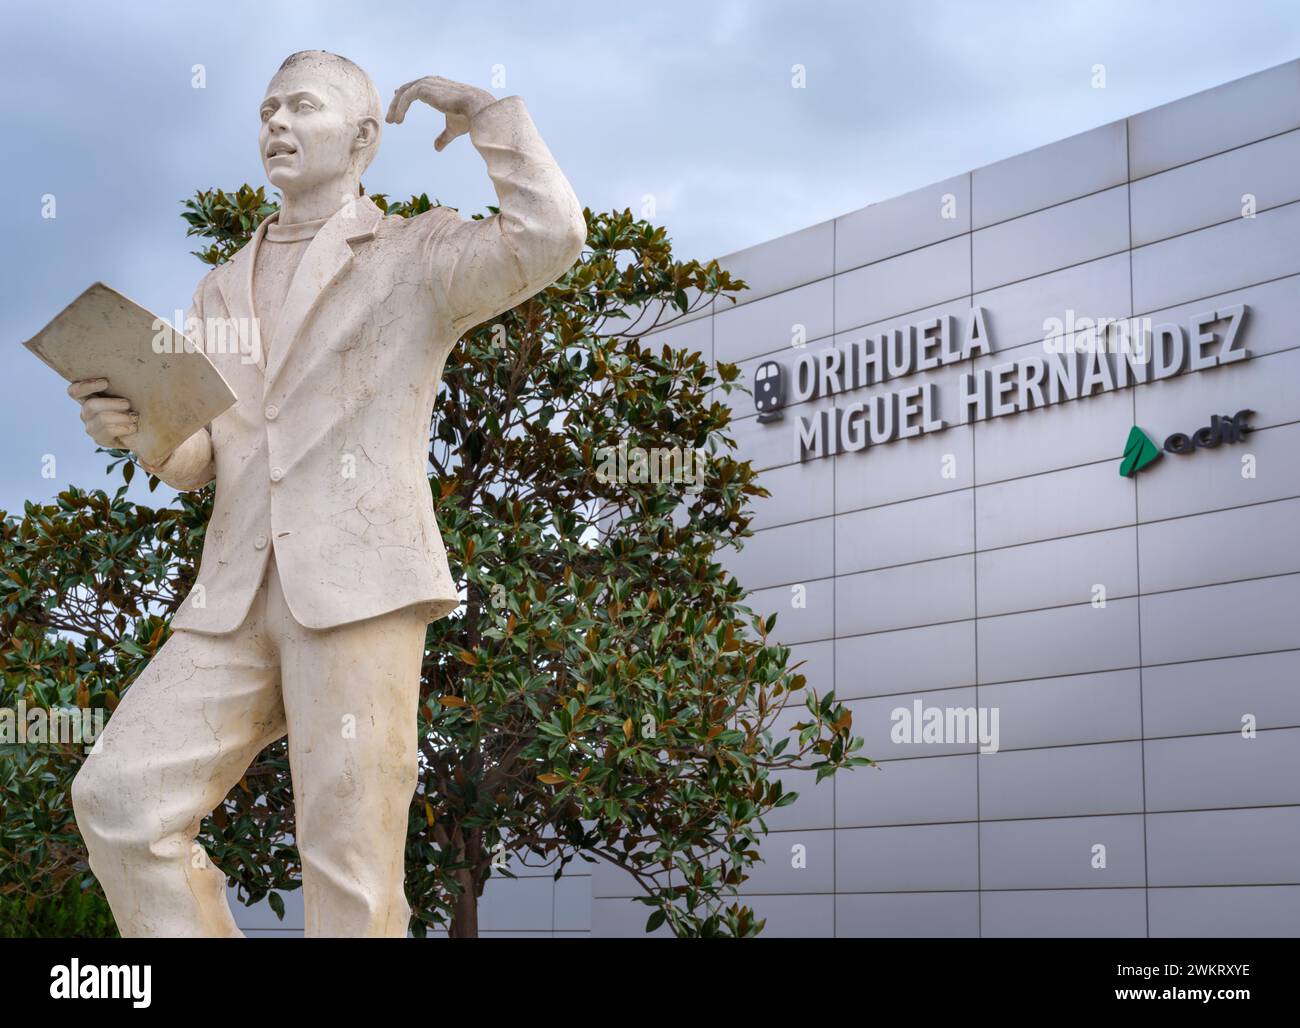 Orihuela Miguel Hernández ist der Bahnhof und Verkehrsknotenpunkt von Orihuela, Alicante, Spanien. Sie ist nach dem berühmten spanischen Bürgerkriegsdichter benannt. Stockfoto